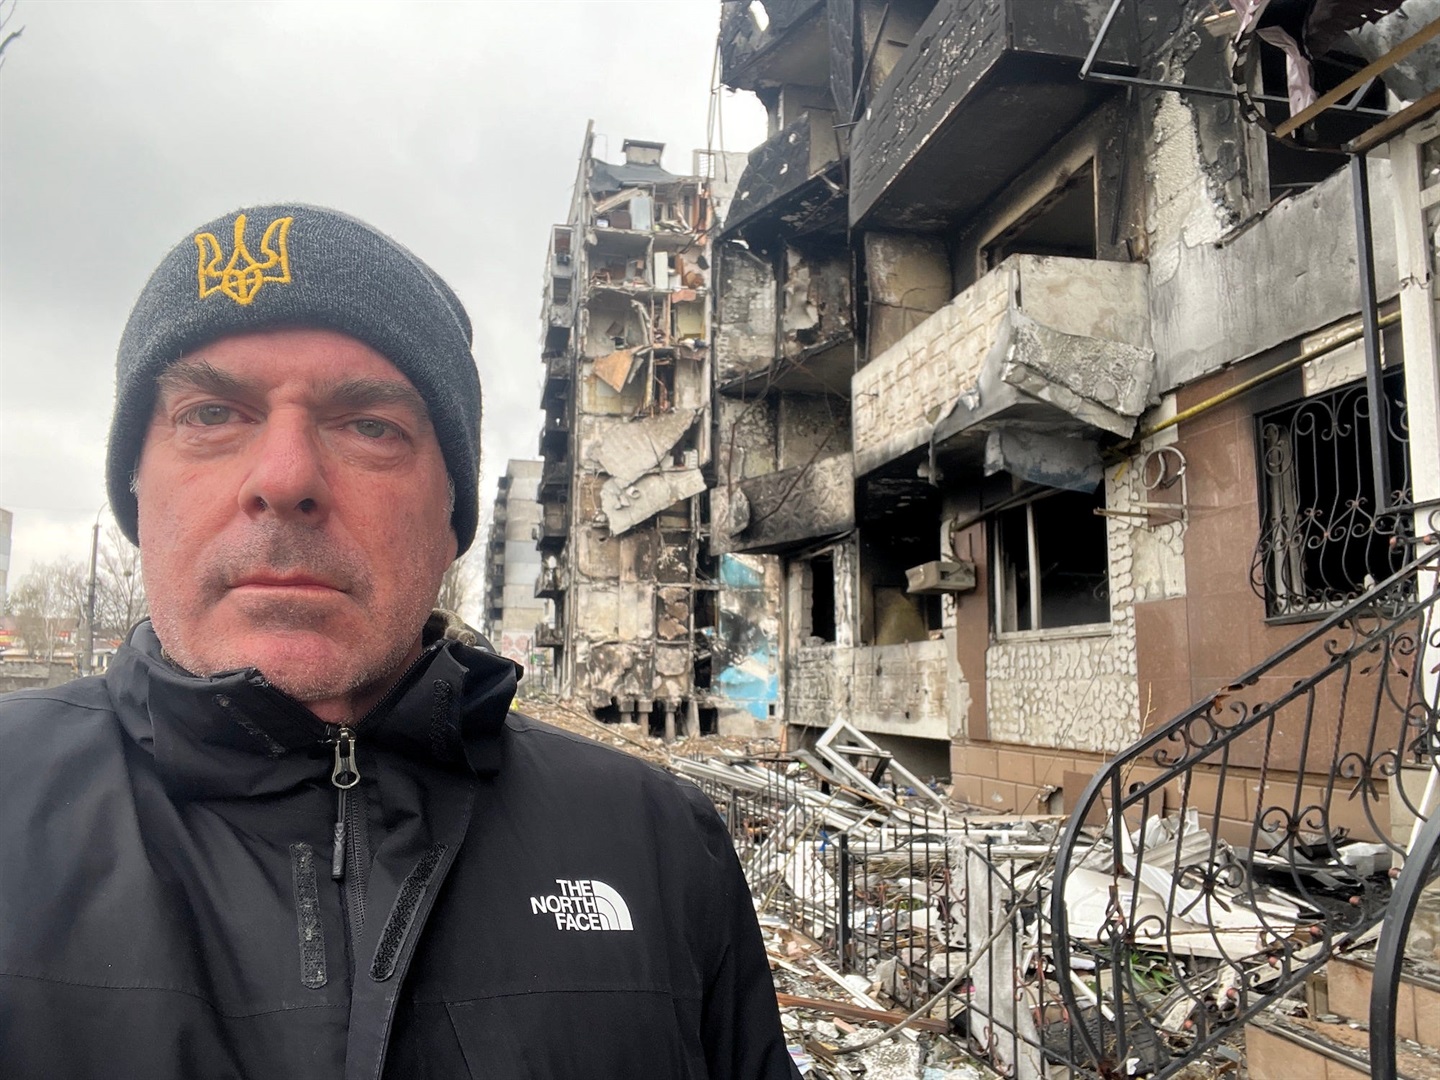 Ukrayna Özgürlük Projesi'nin kurucusu Steven Moore, Borodyanka'da büyük bir bölümü yok edilmiş bir topluluğun önünde duruyor.  Steven Moore'un izniyle